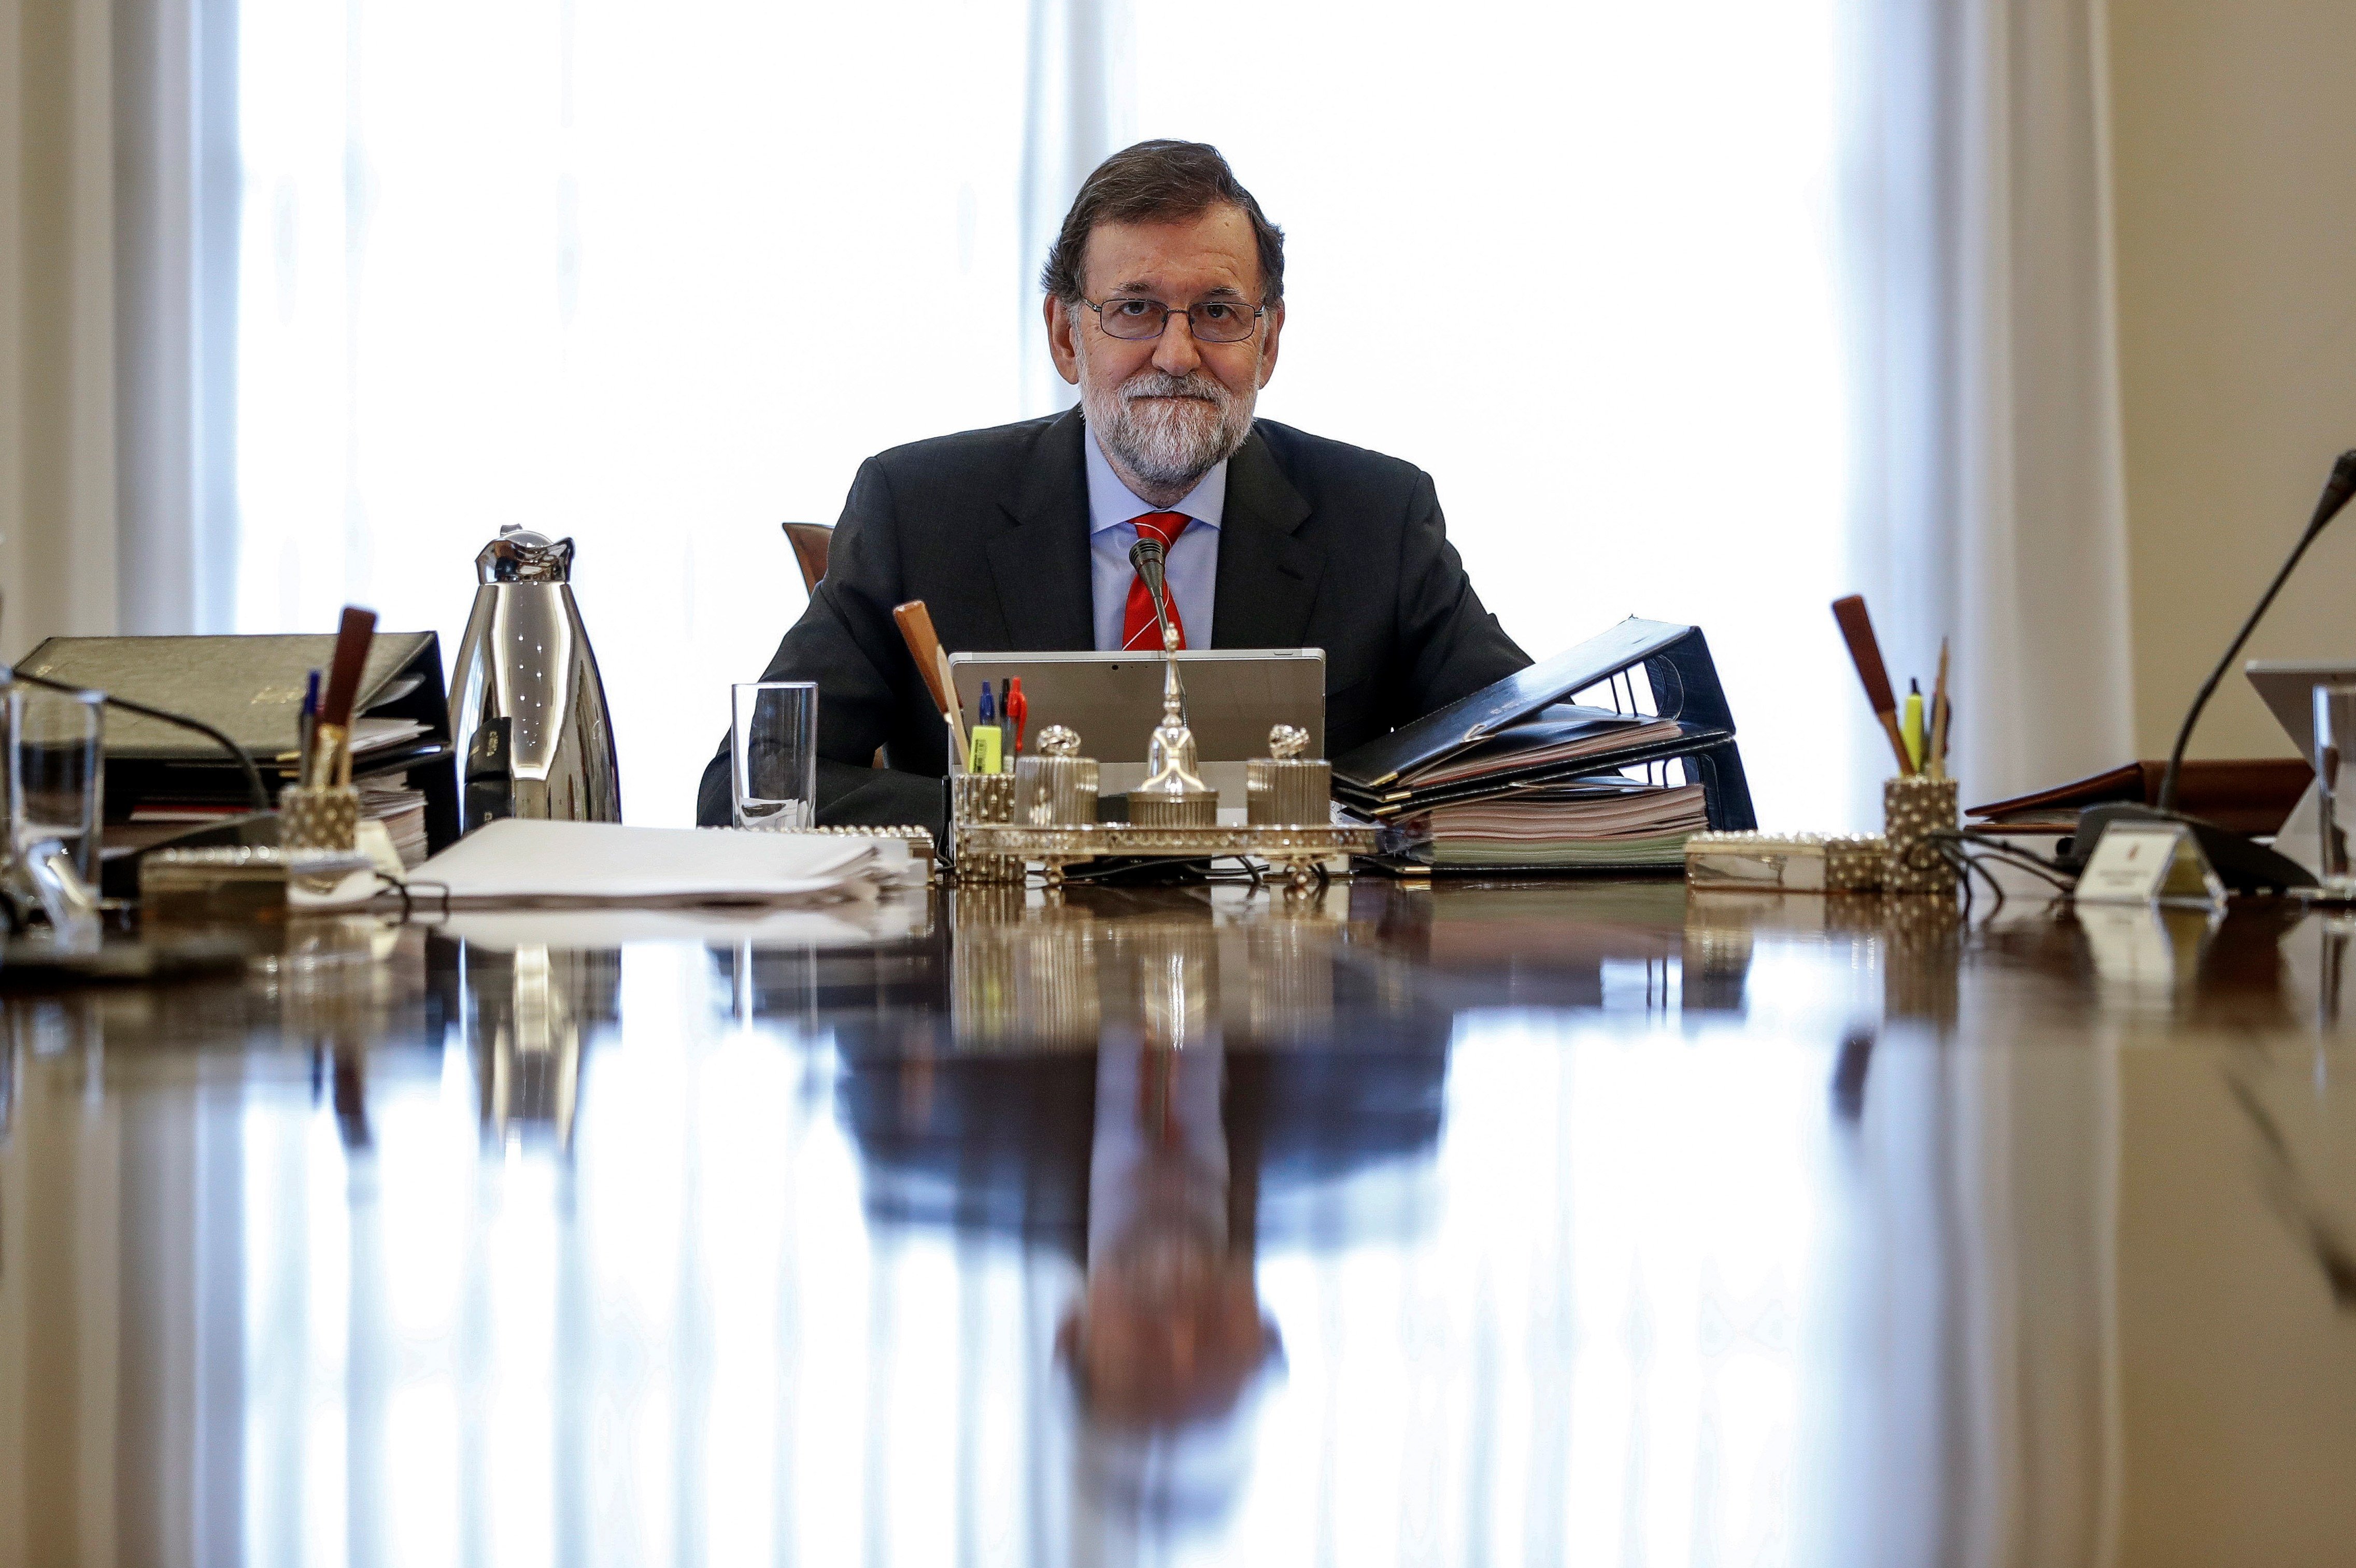 La anemia de la oposición destensa a Rajoy, pese al rebrote de protestas